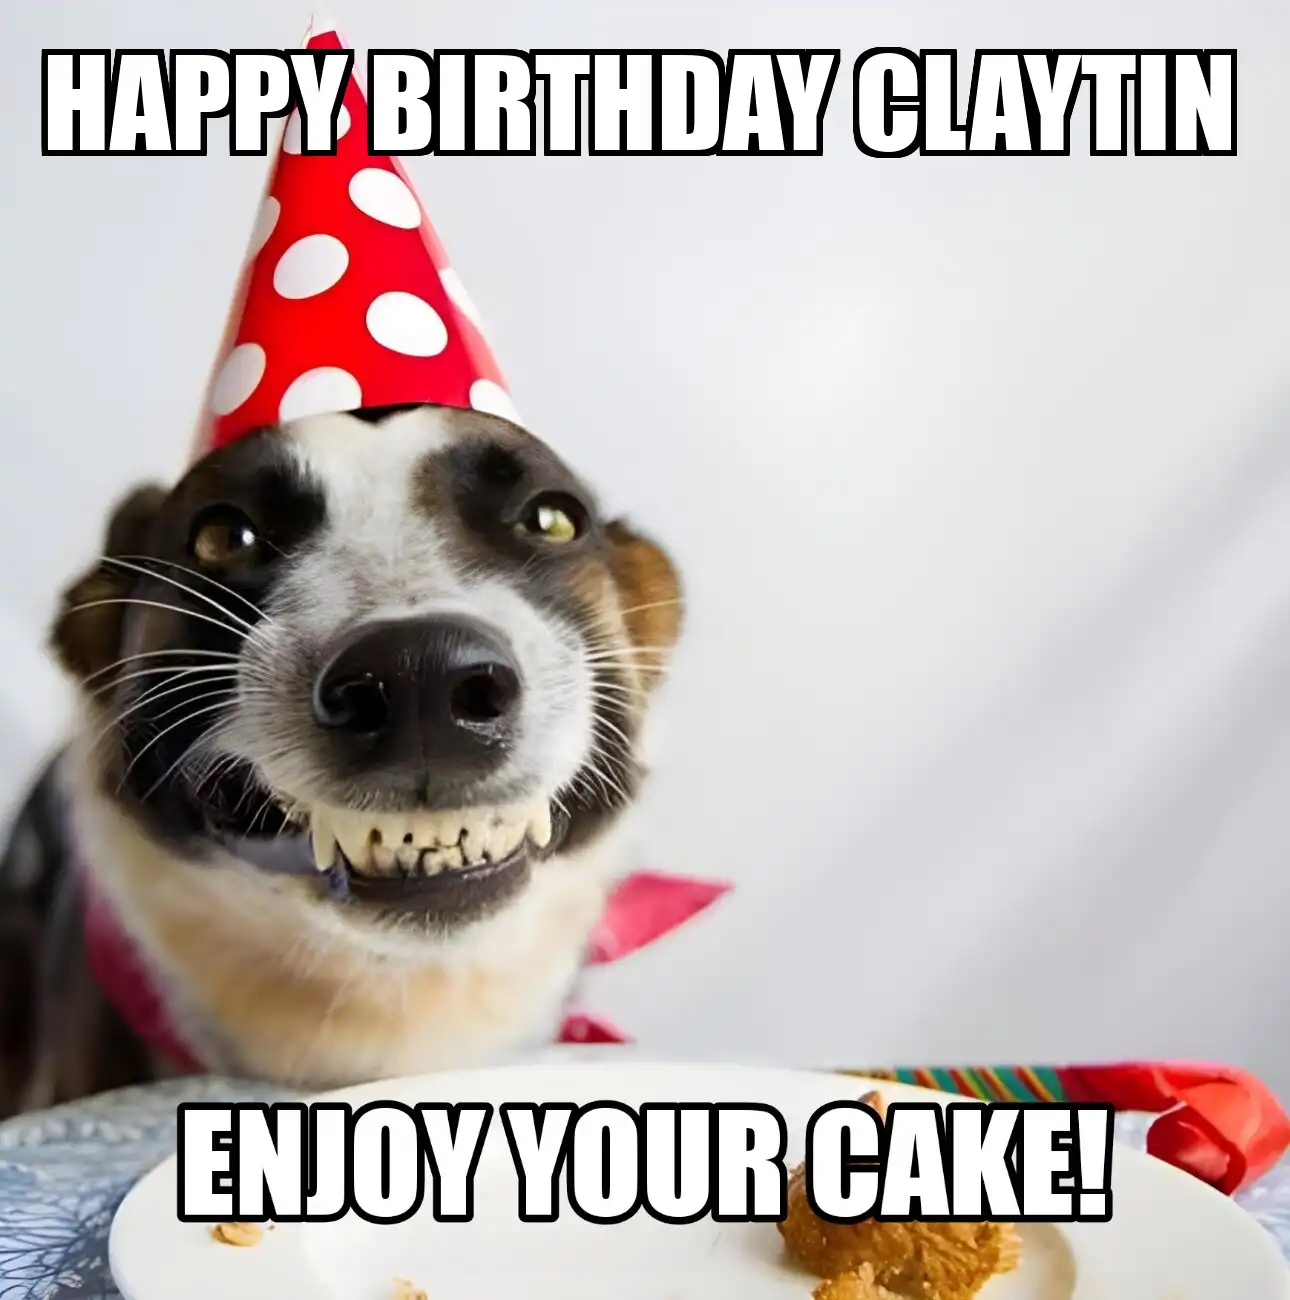 Happy Birthday Claytin Enjoy Your Cake Dog Meme